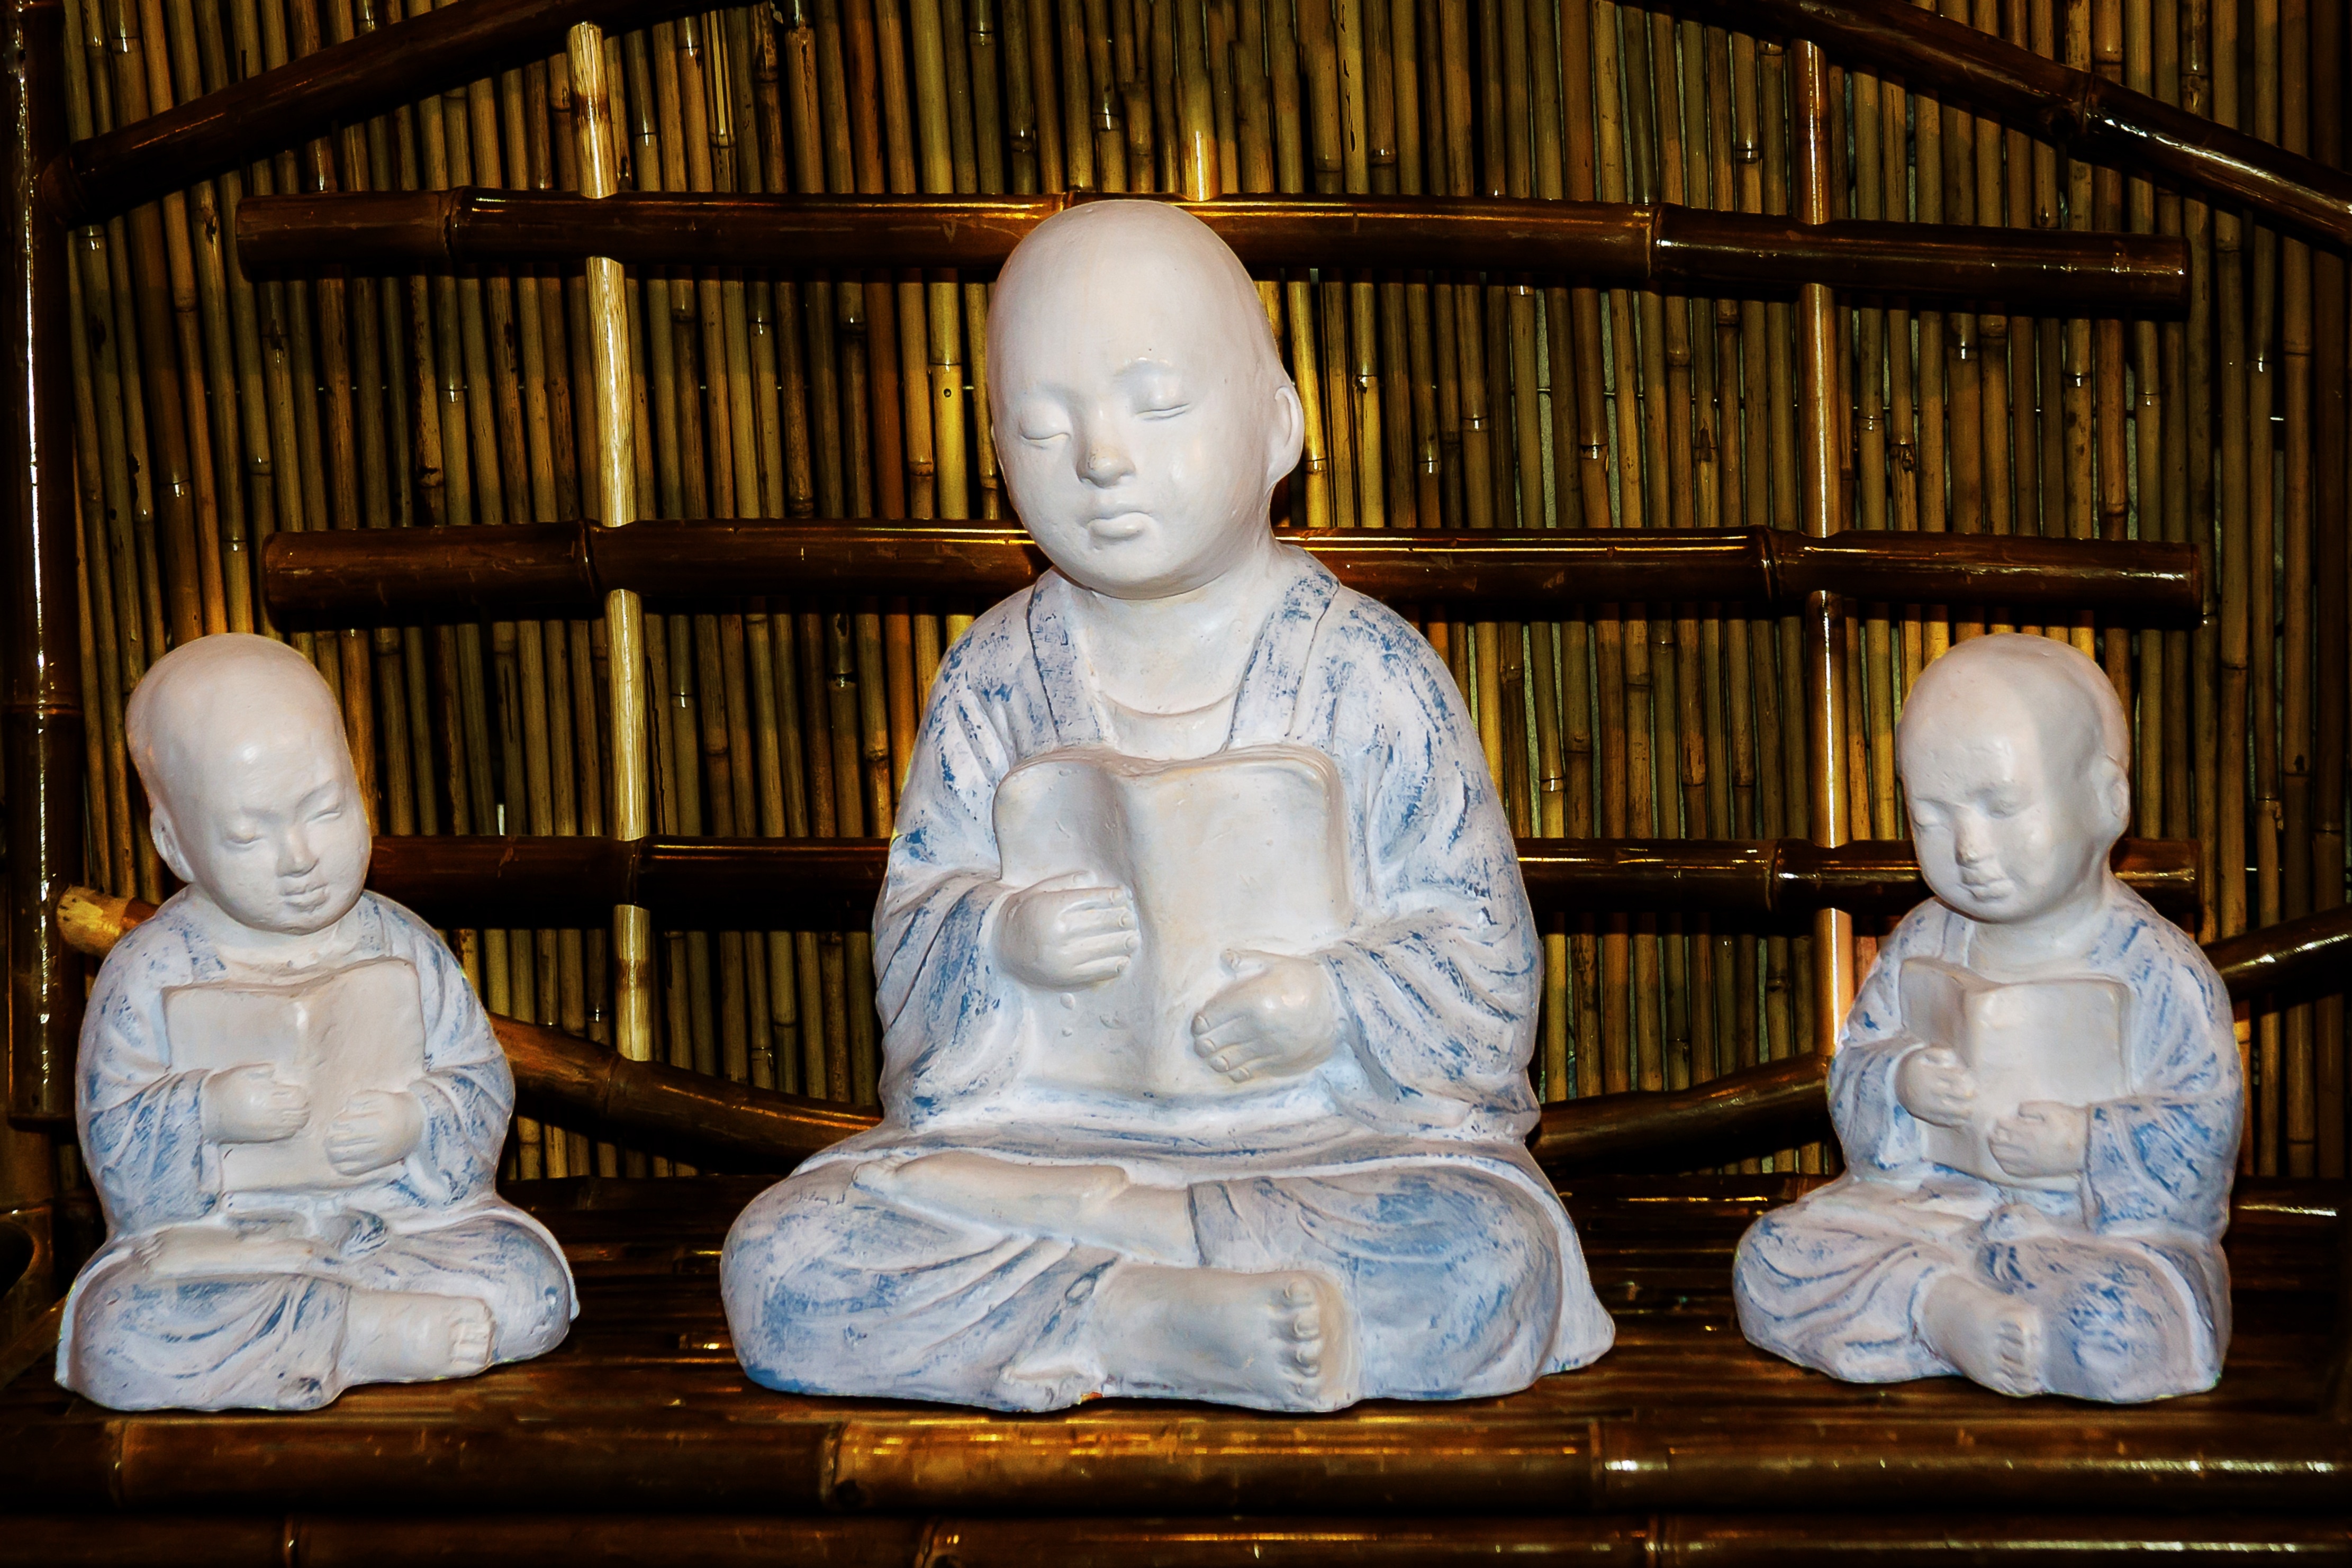 3 hairless human ceramic figurines